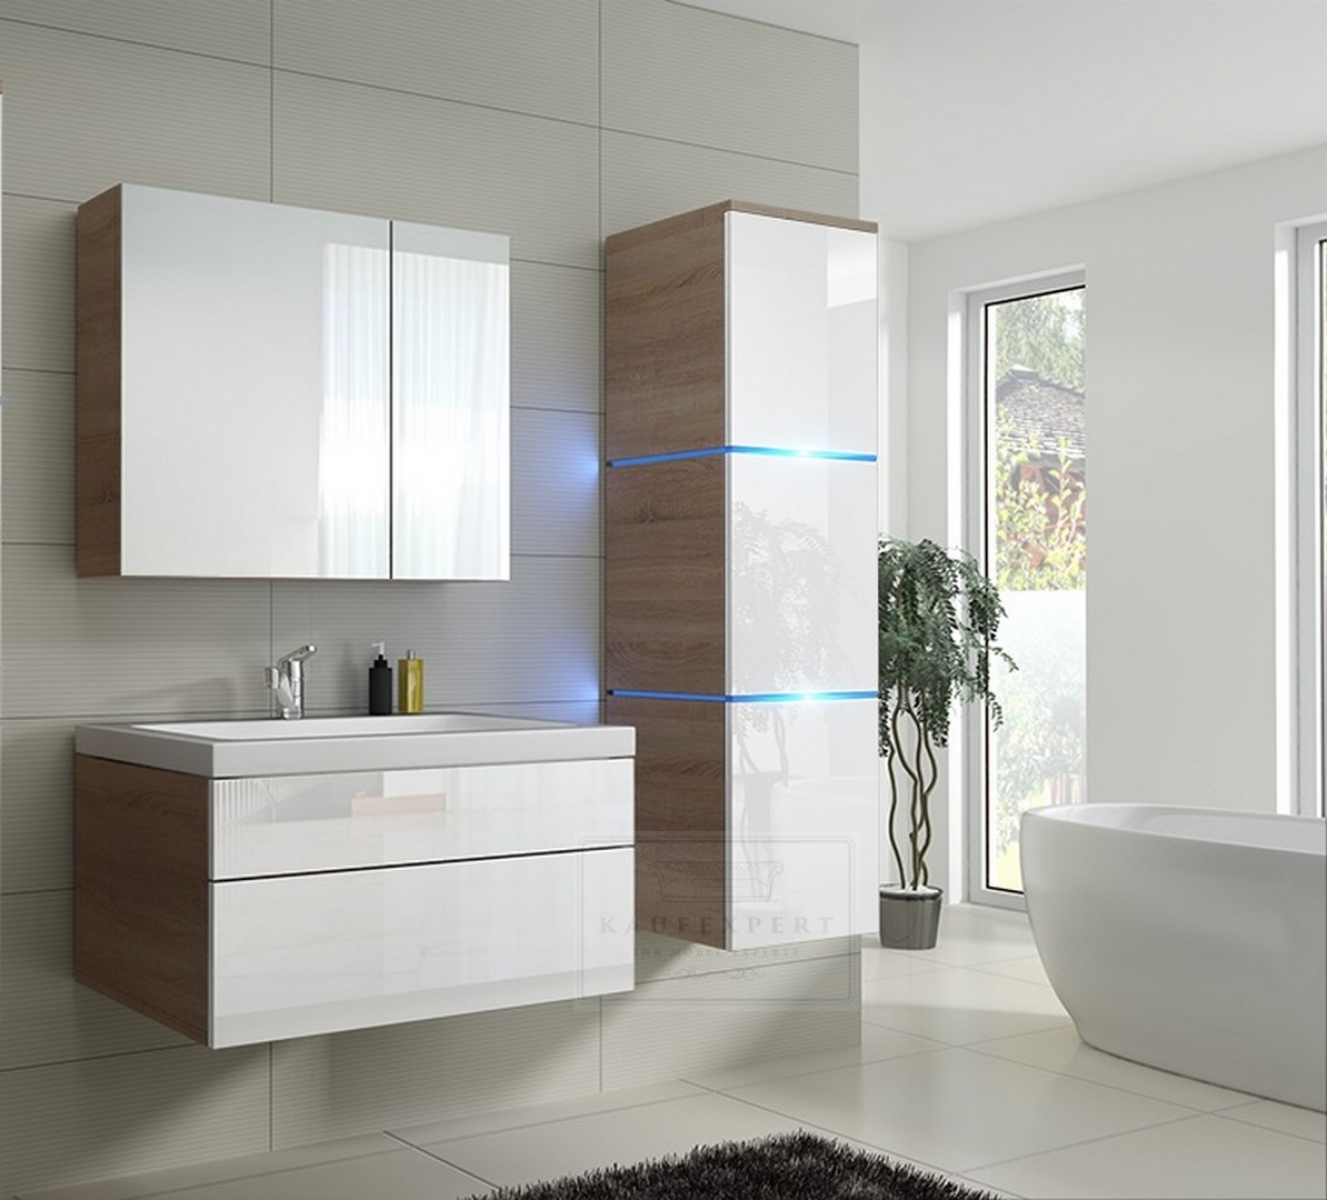 Badmöbel-Set Lux 1 NEW Weiß Hochglanz/Sonoma KERAMIK Waschbecken Badezimmer Led Beleuchtung Badezimmermöbel Keramikbecken